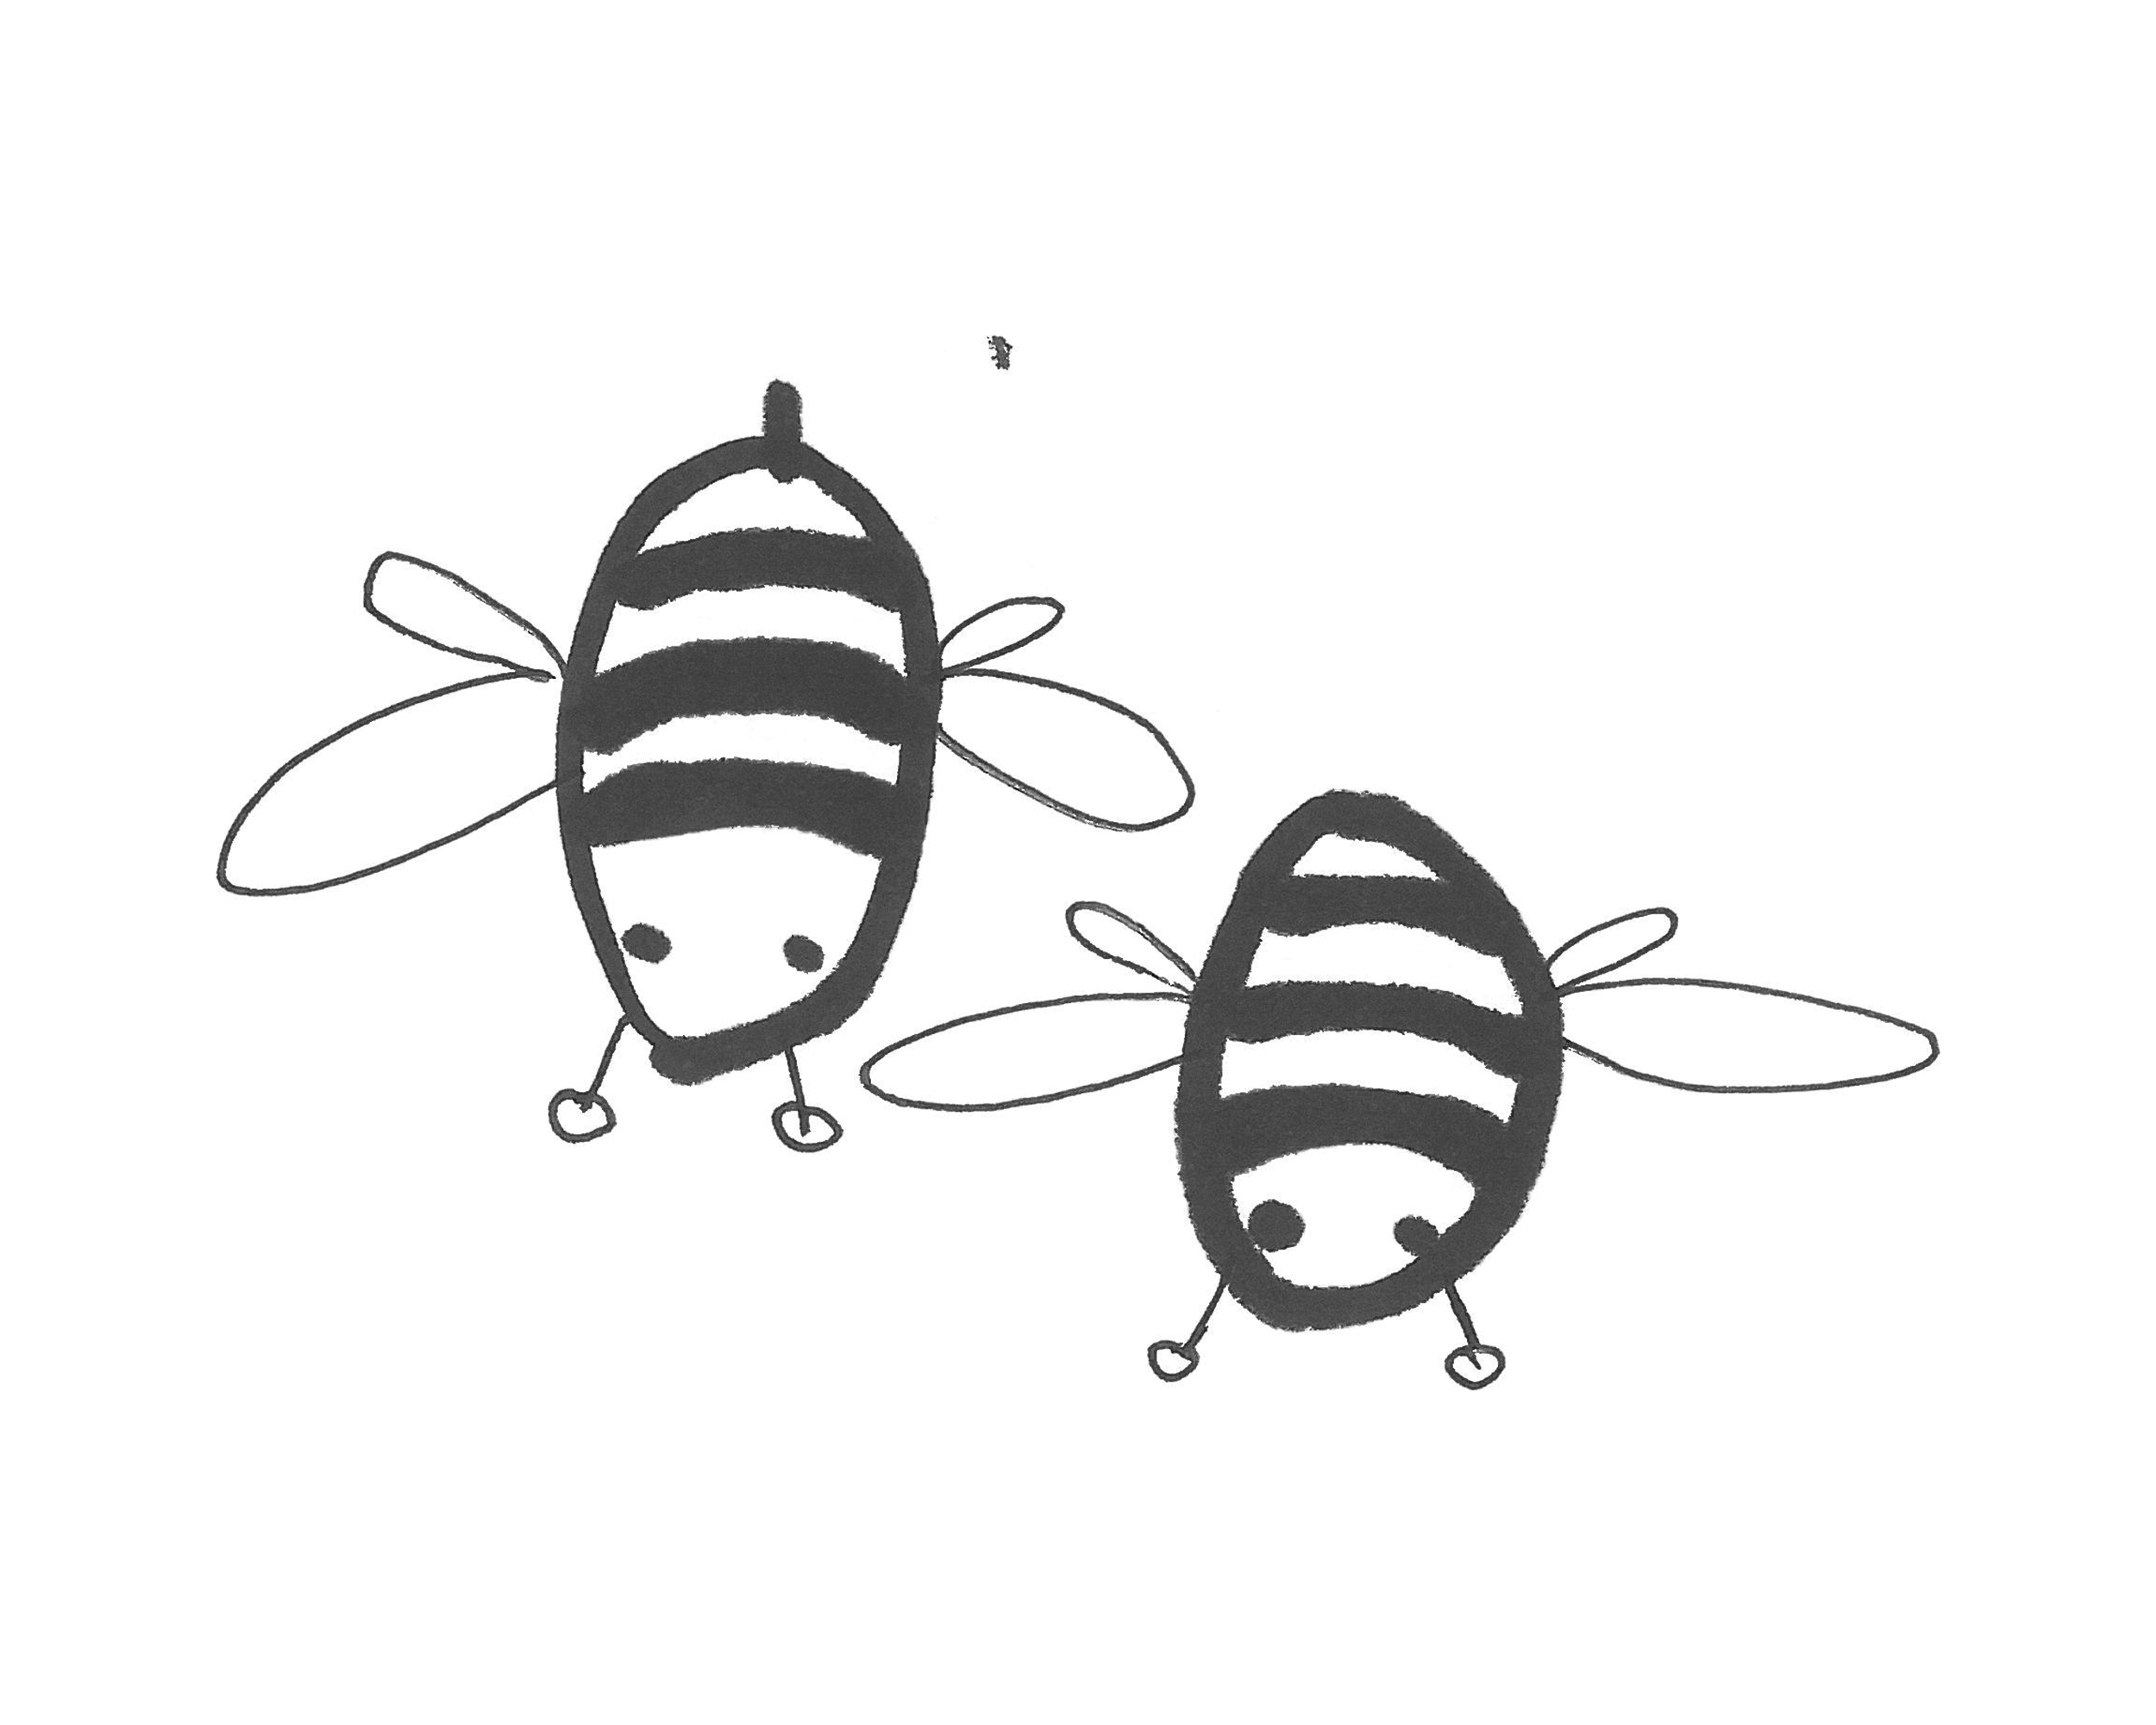 少儿彩色画画 漂亮简笔画小蜜蜂怎么画图解教程